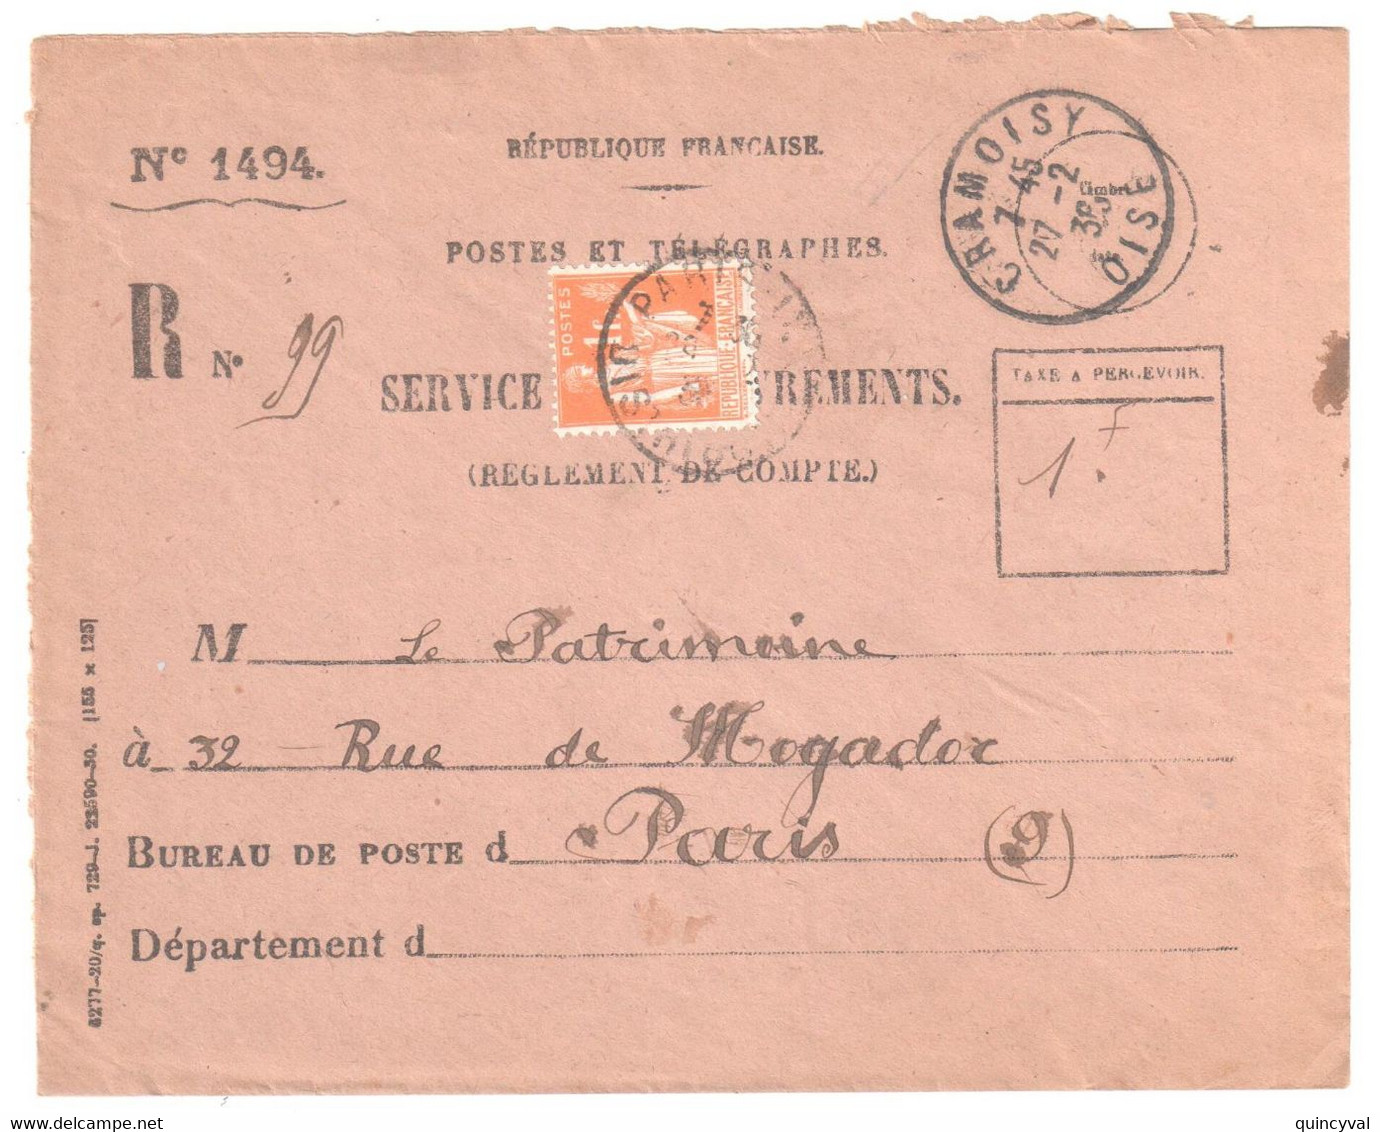 CRAMOISY Oise Recouvrement Formule 1494 Entière Yv 286 1F Paix Orange Utilisé Pour Taxe Ob 27 2 1936 - Covers & Documents